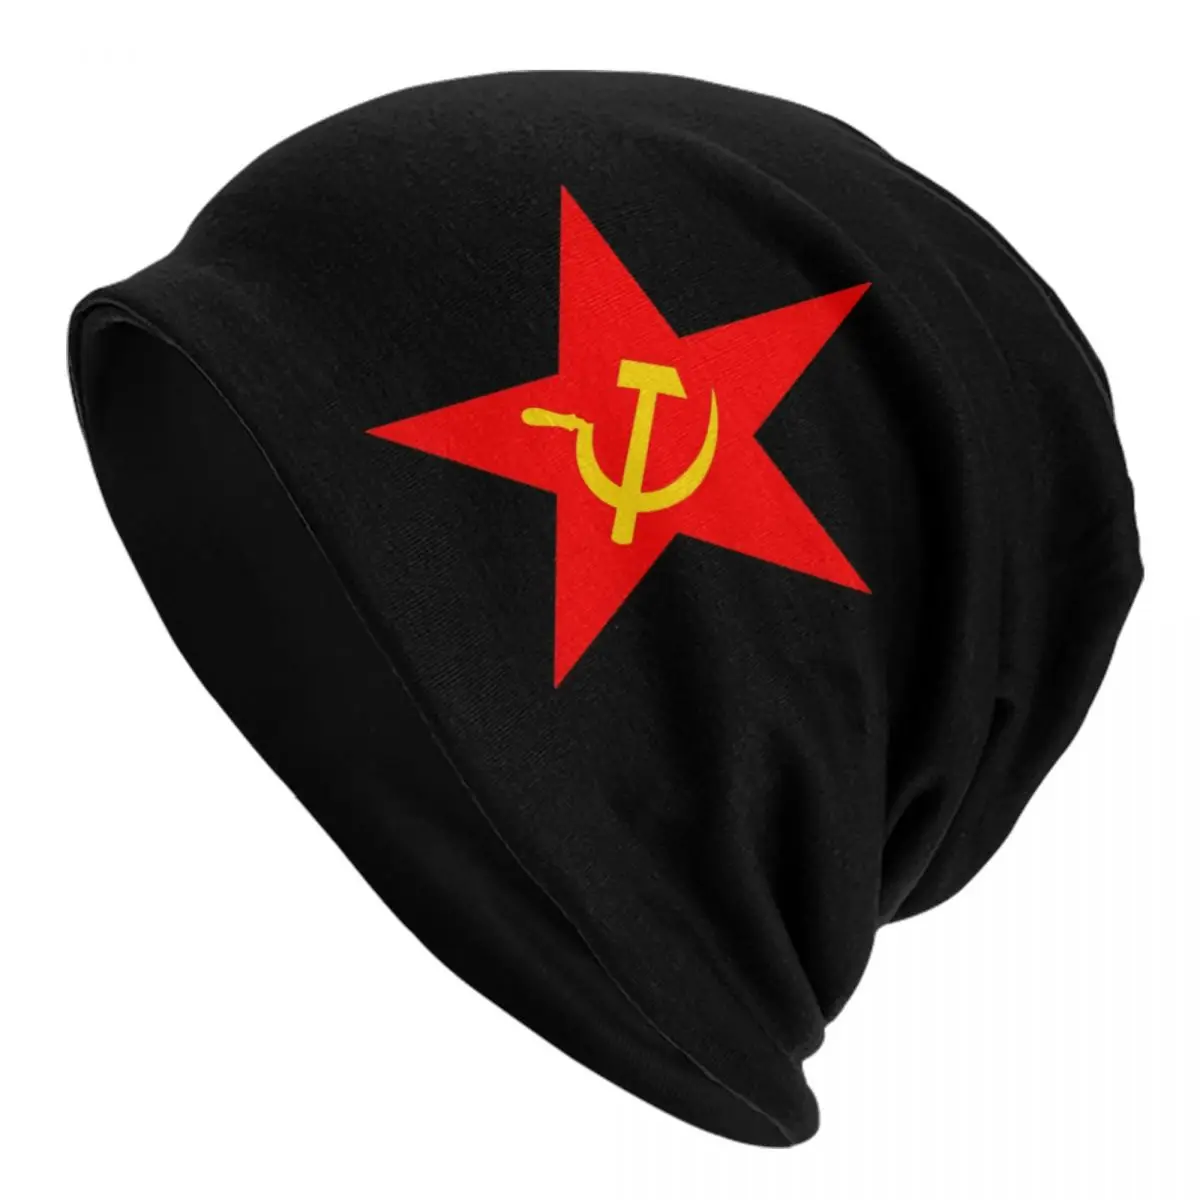 

Облегающие шапки Hammer Sickle с красной звездой, облегающие шапки, зимняя теплая вязаная шапка, облегающая шапка СССР, коммунизма, шапки, Лыжная шапка